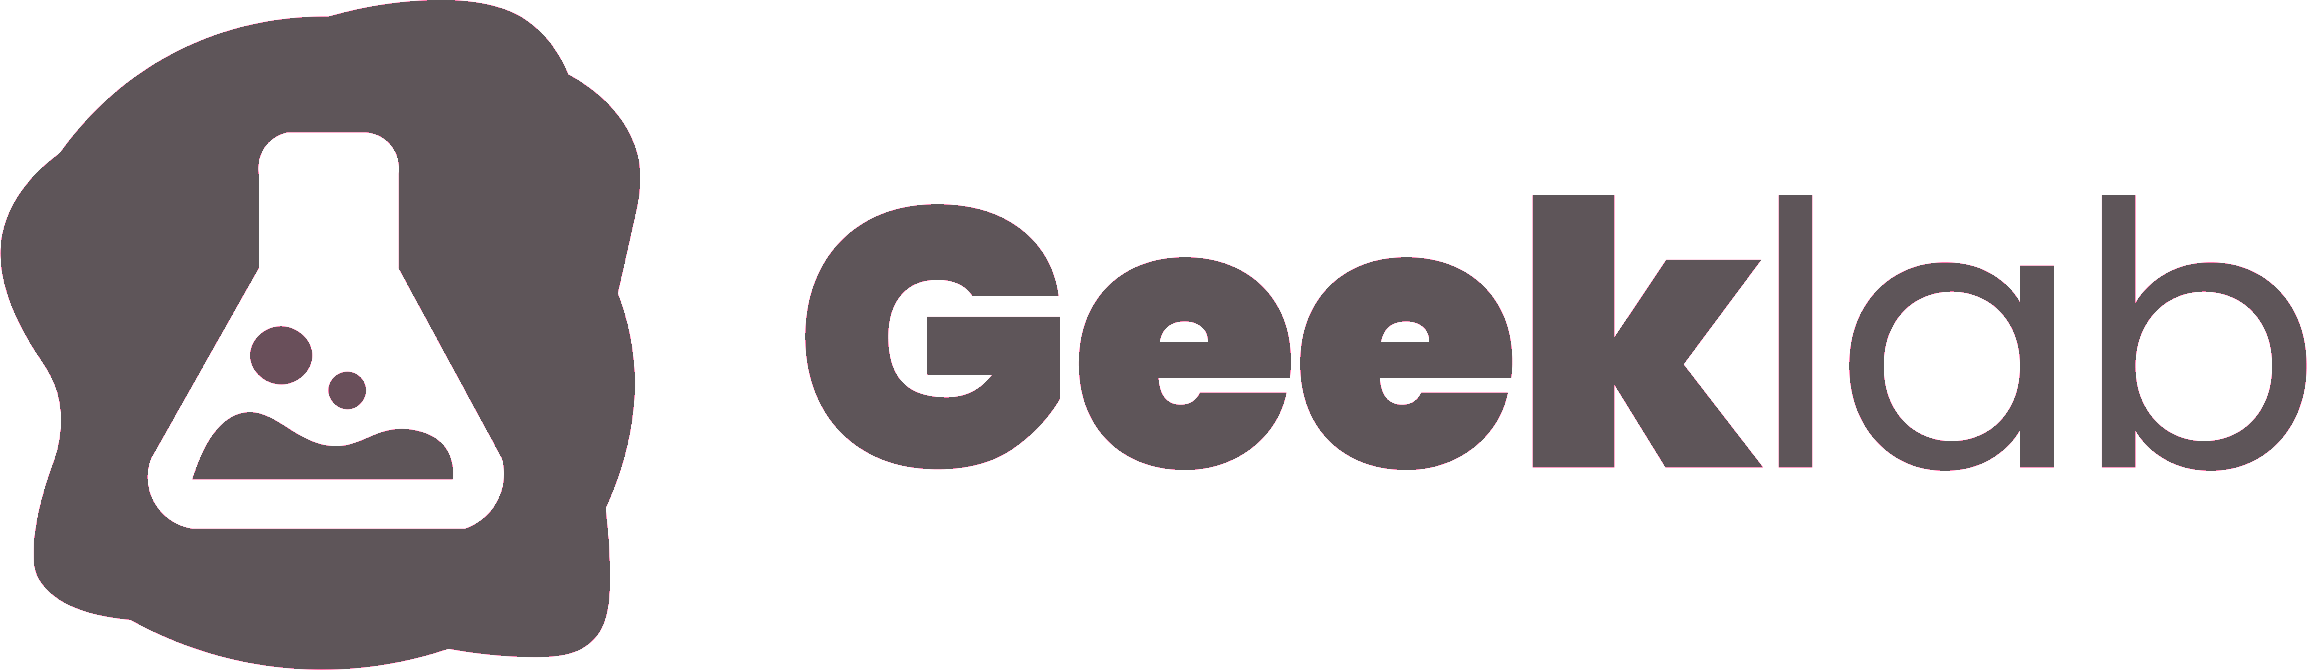 Geeklab_grey.png